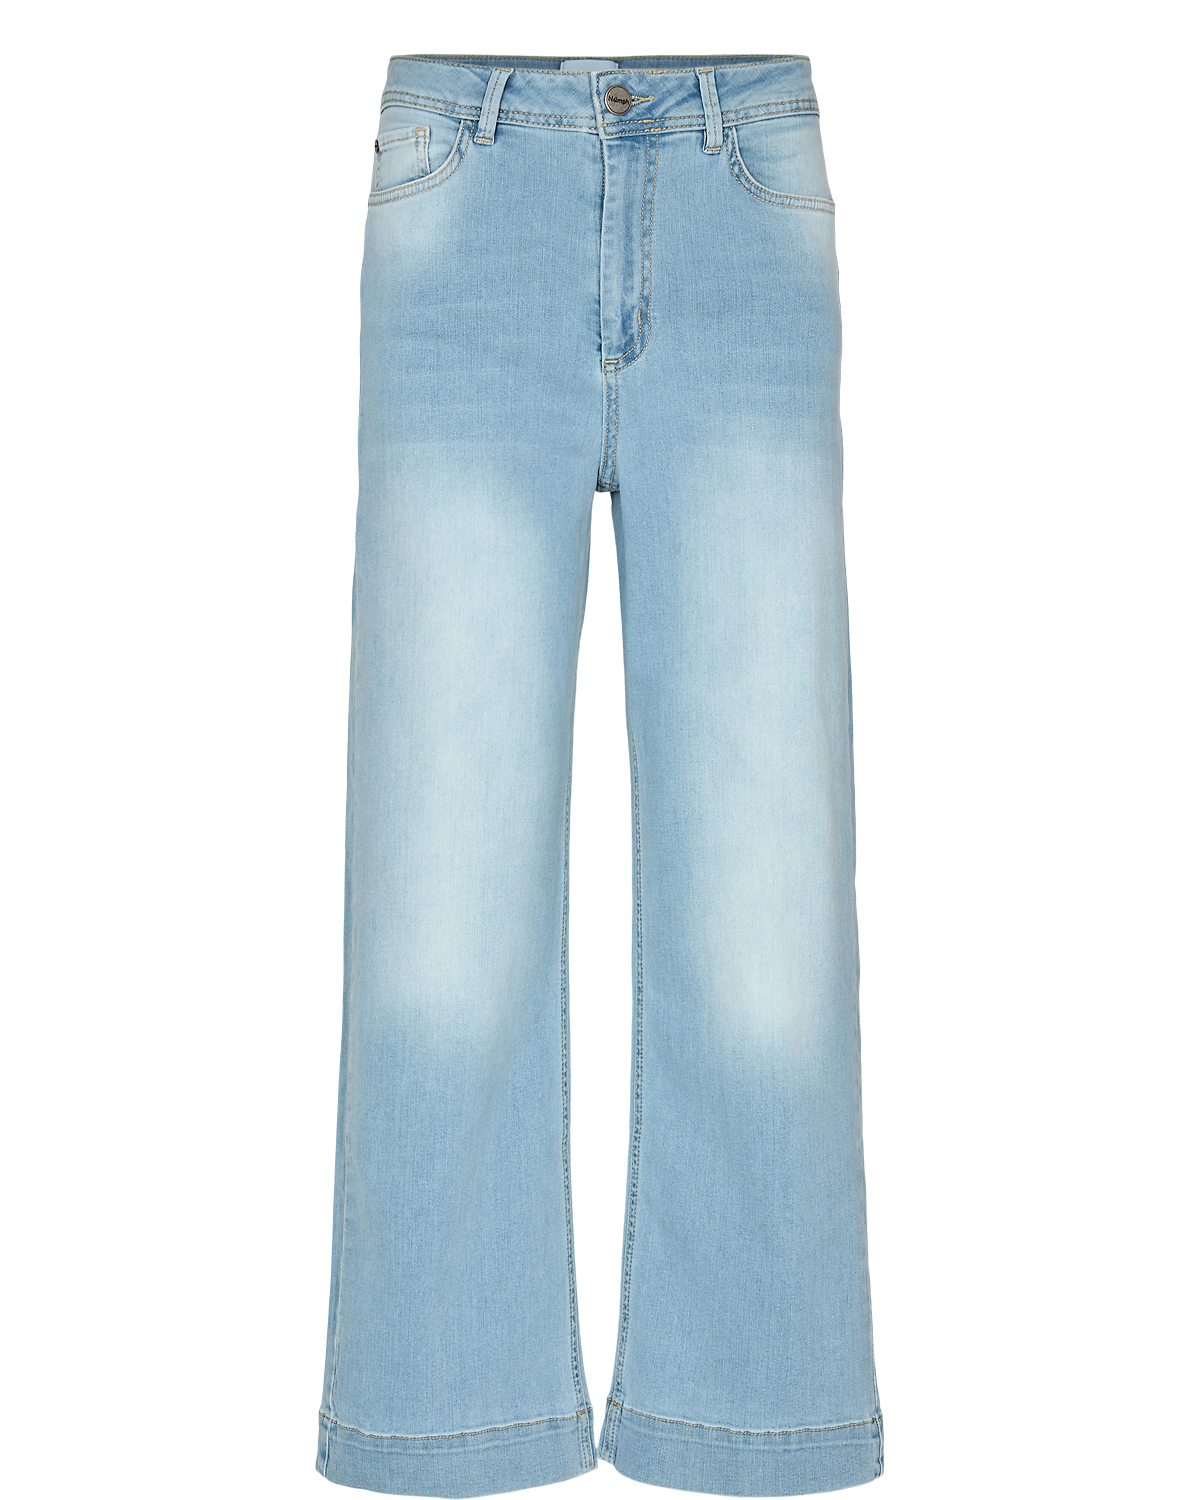 Nümph NuParis Cropped Jeans, lys denimblå